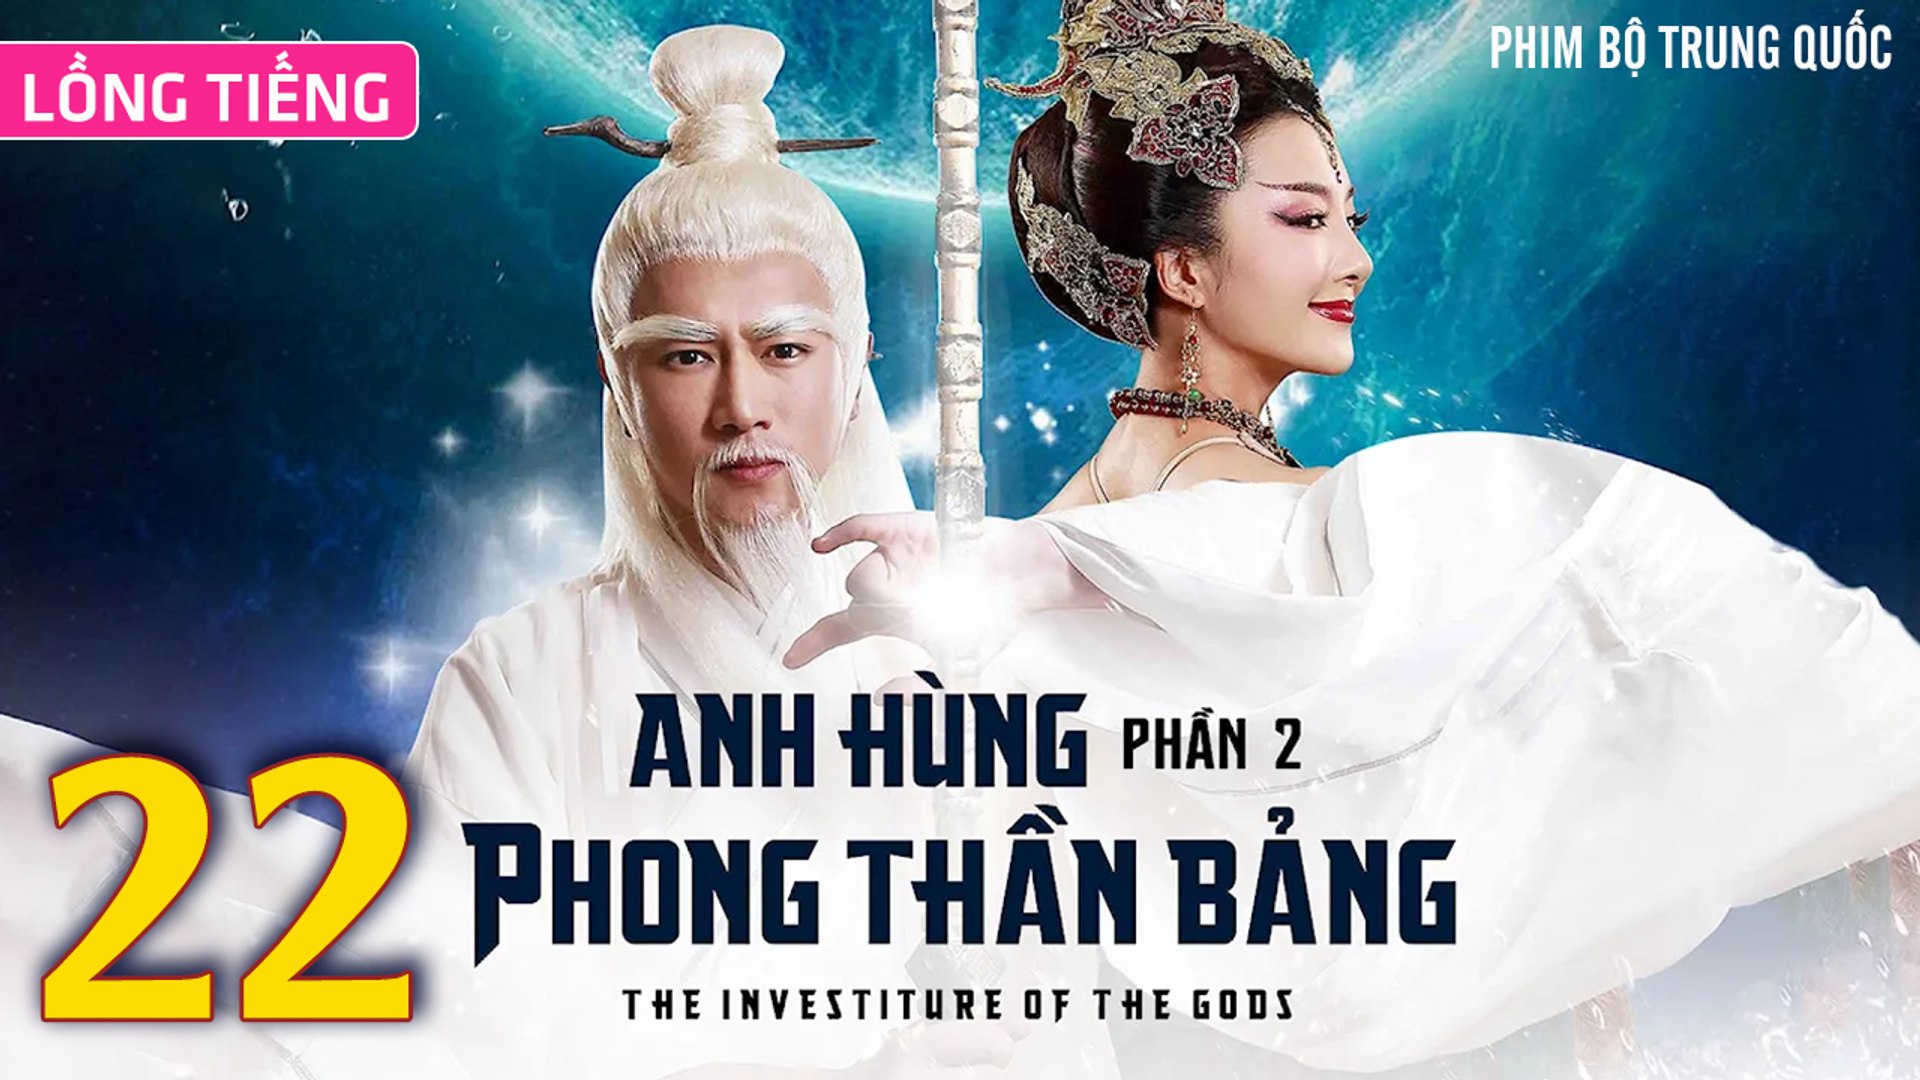 ⁣Phim Bộ Hay: ANH HÙNG PHONG THẦN BẢNG 2 - Tập 22 (Lồng Tiếng) | Phim Bộ Trung Quốc Hay Nhất 2023